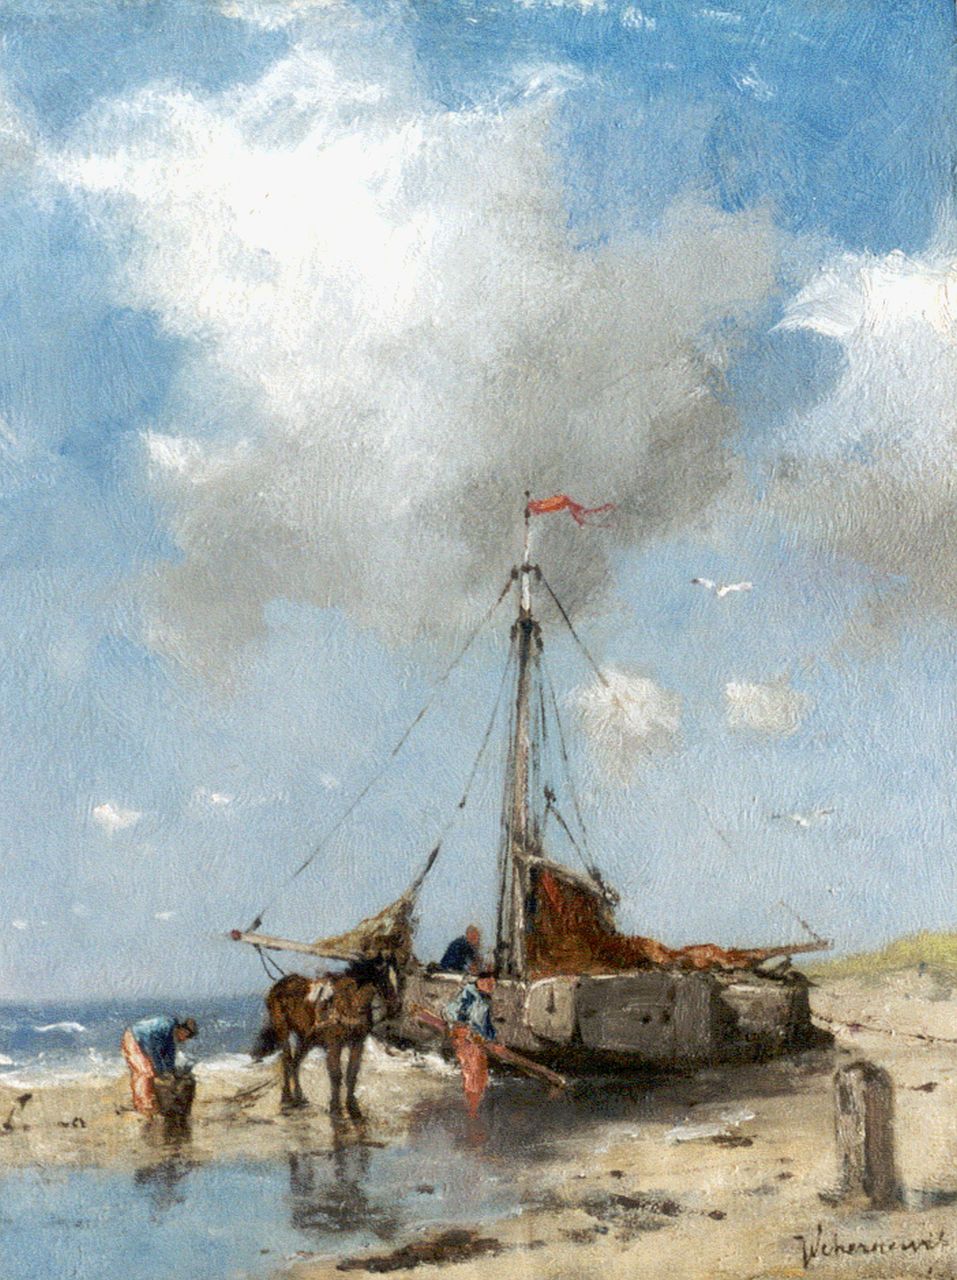 Scherrewitz J.F.C.  | Johan Frederik Cornelis Scherrewitz, Schelpenvissers bij een platbodem op het strand, 26,2 x 20,2 cm, gesigneerd rechtsonder